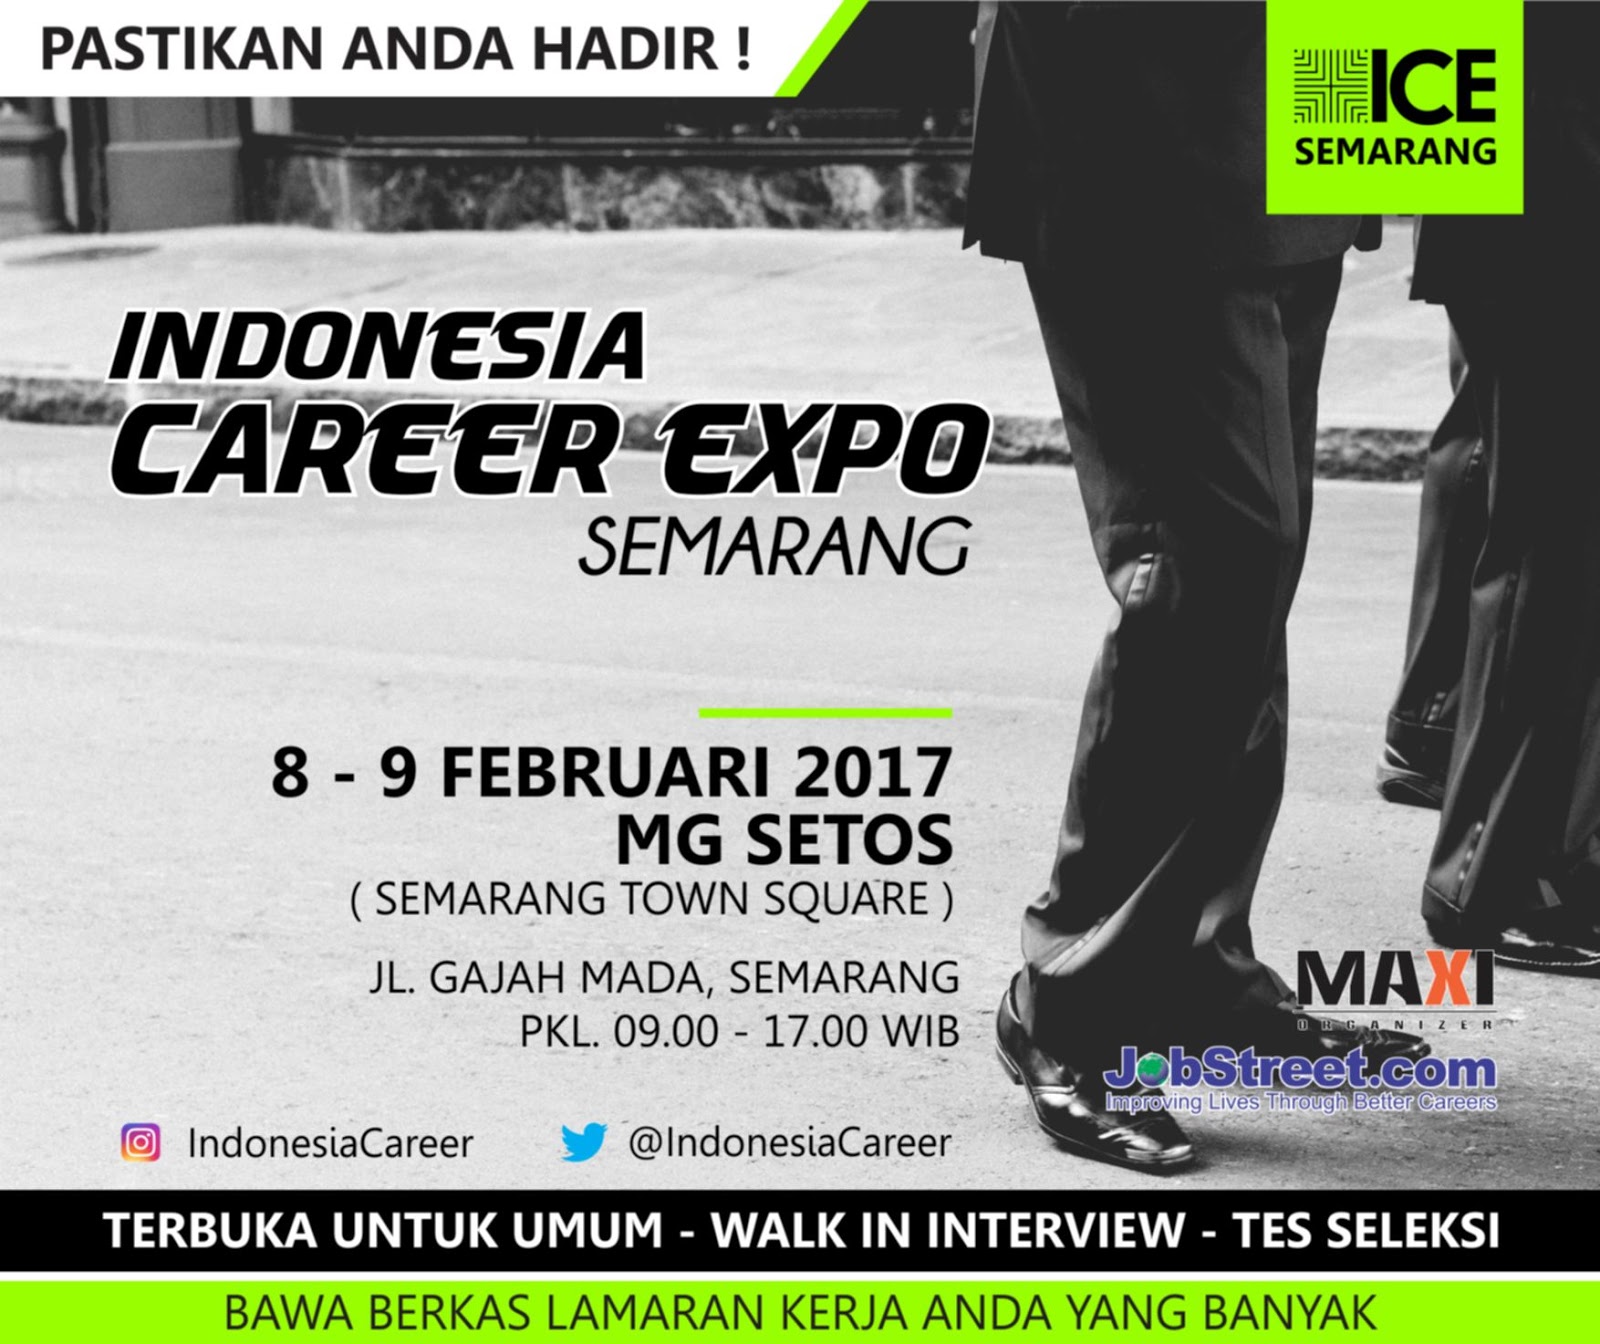 Indonesia Career Expo Tanggal 8 - 9 Februari 2017 di MG 